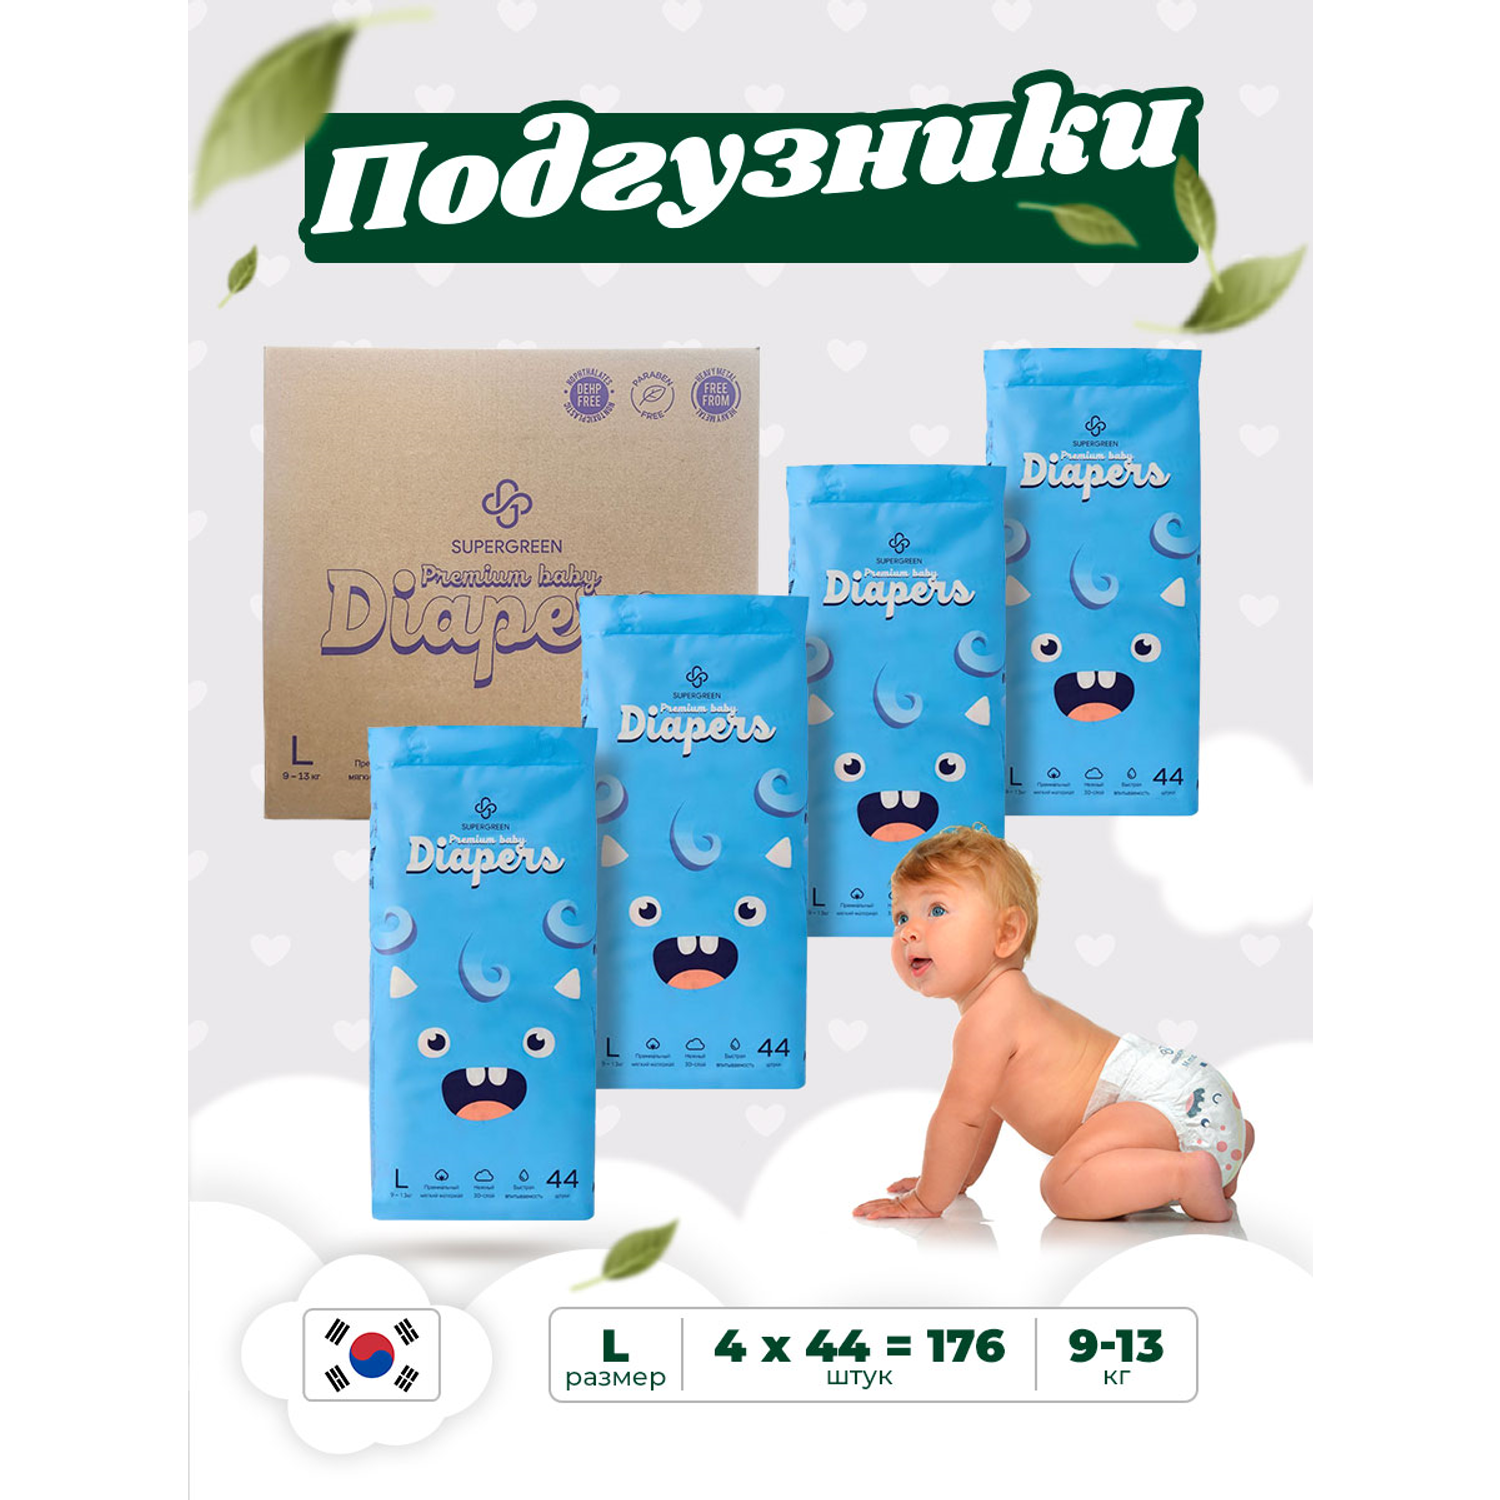 Подгузники SUPERGREEN Premium baby Diapers L размер 4 упаковки по 44 шт 9-13 кг ультрамягкие - фото 1